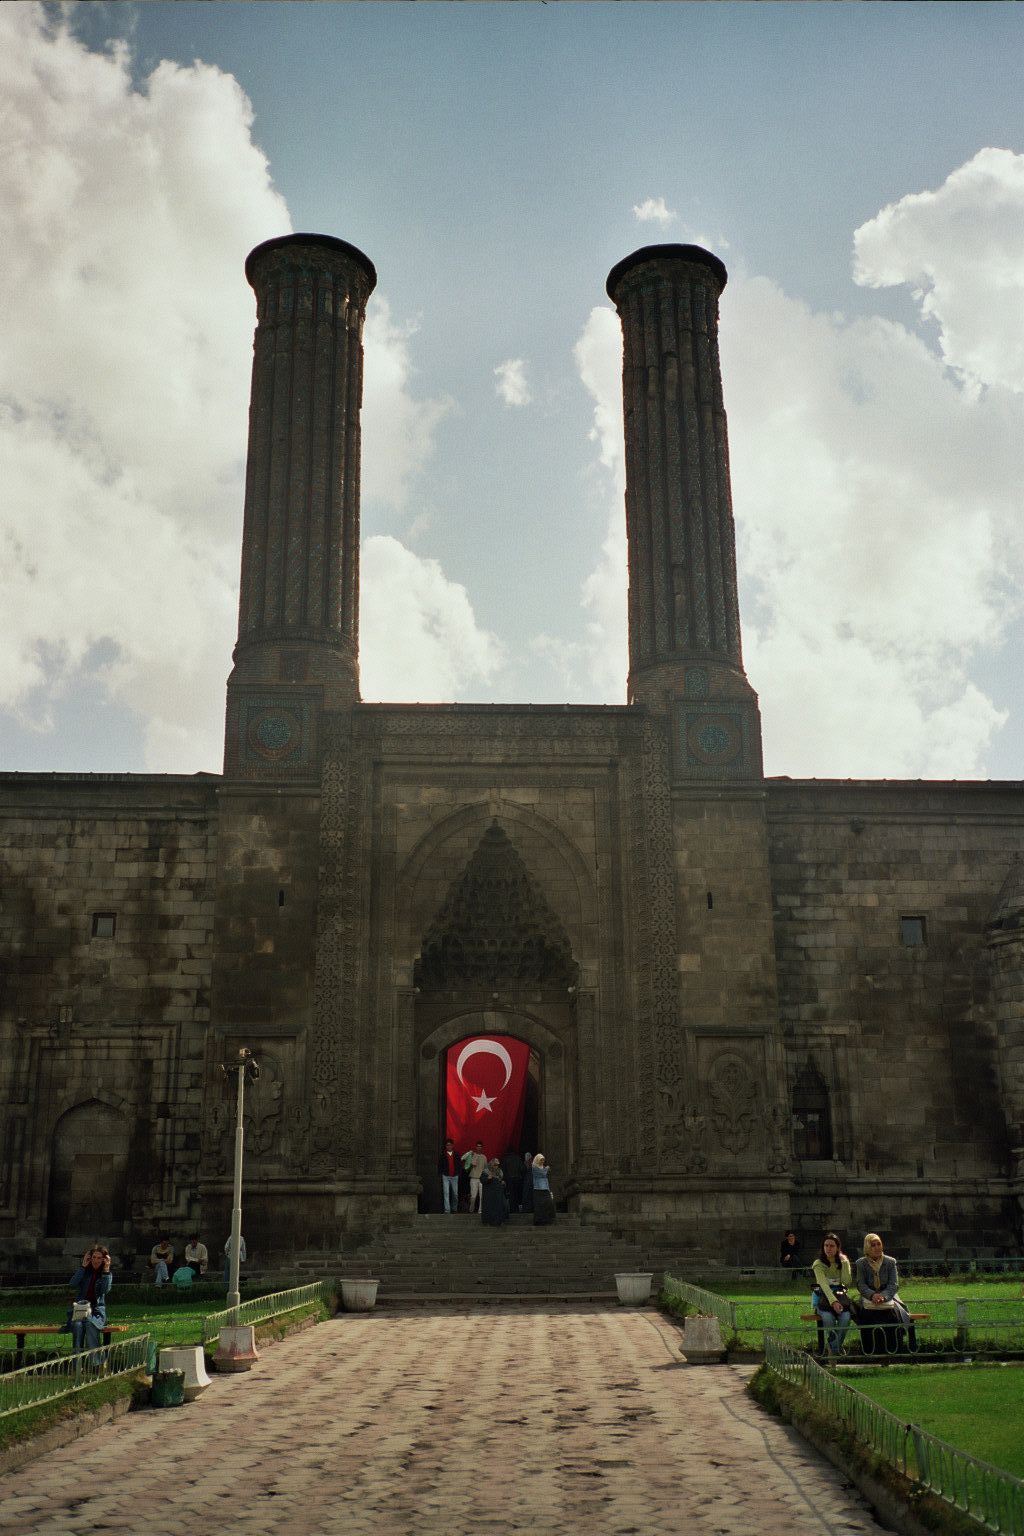 Seminary with twin minarets, Erzurum